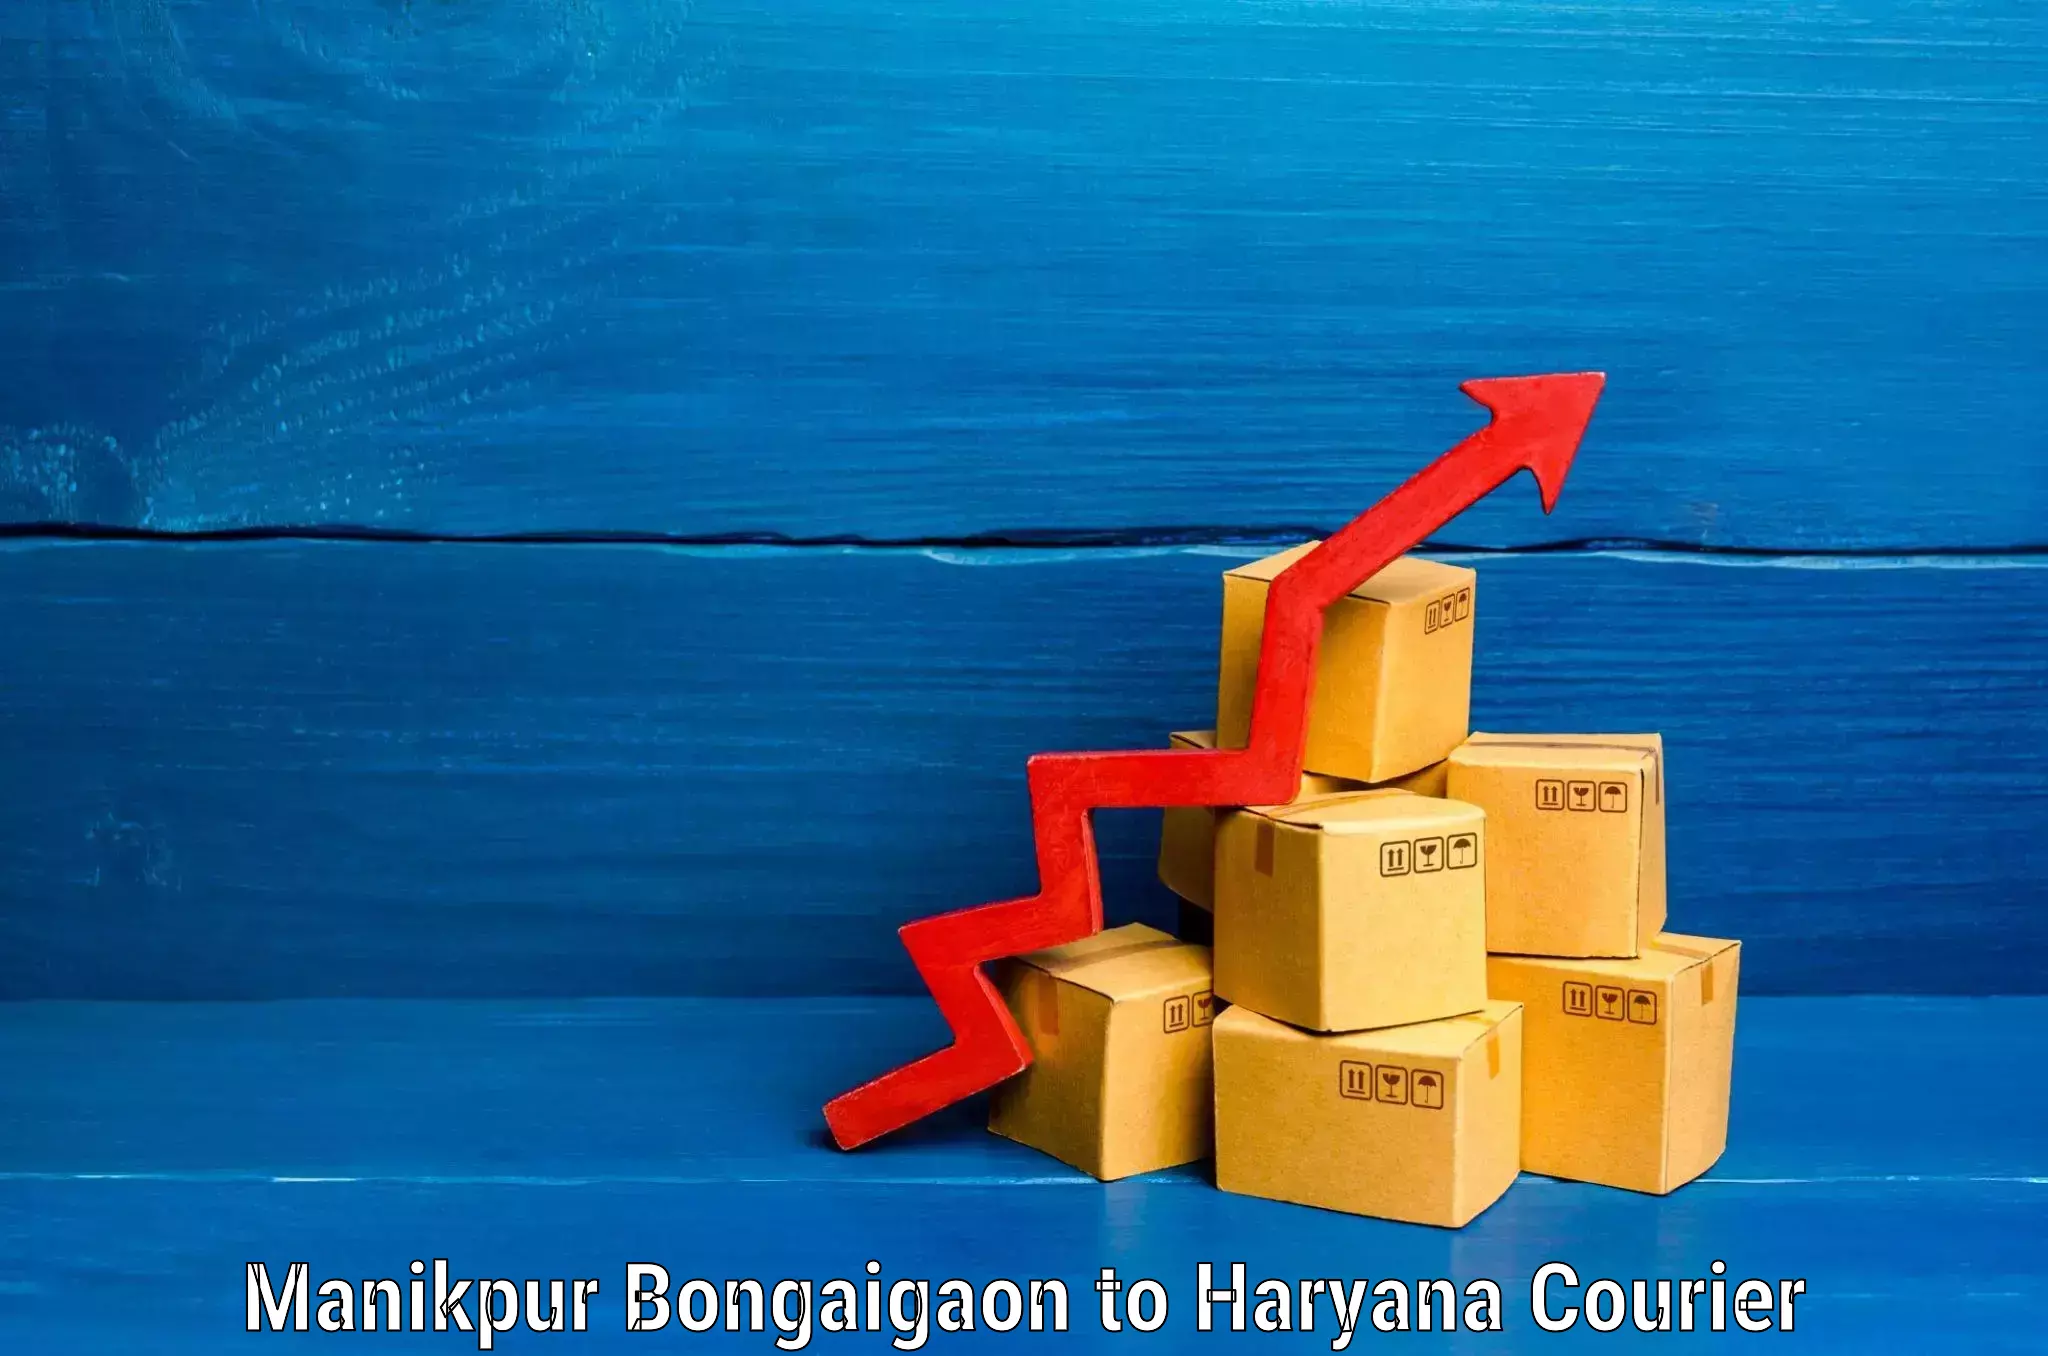 Baggage shipping service Manikpur Bongaigaon to Sohna